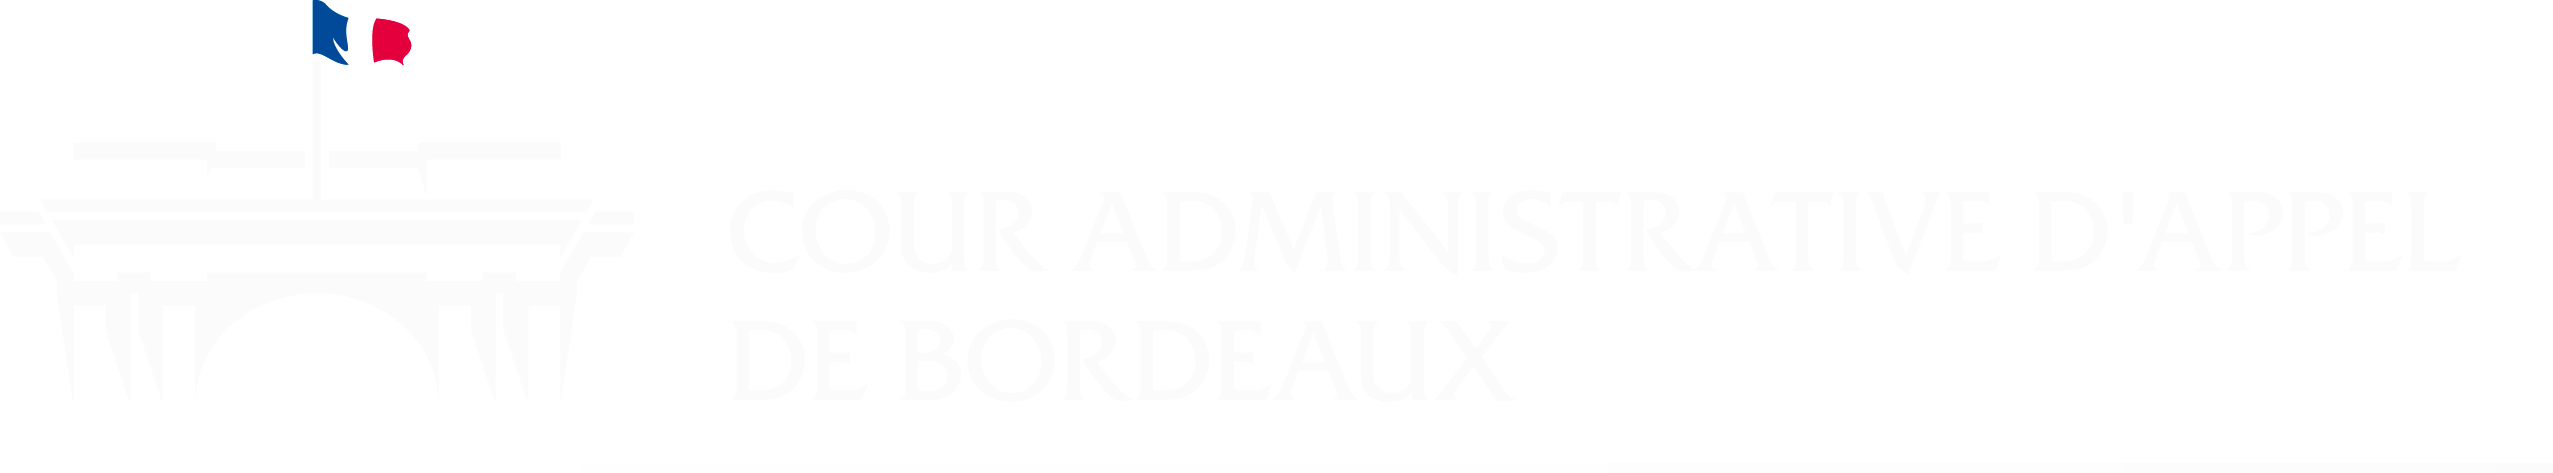 Cour administrative d'appel de Bordeaux - Retour à l'accueil